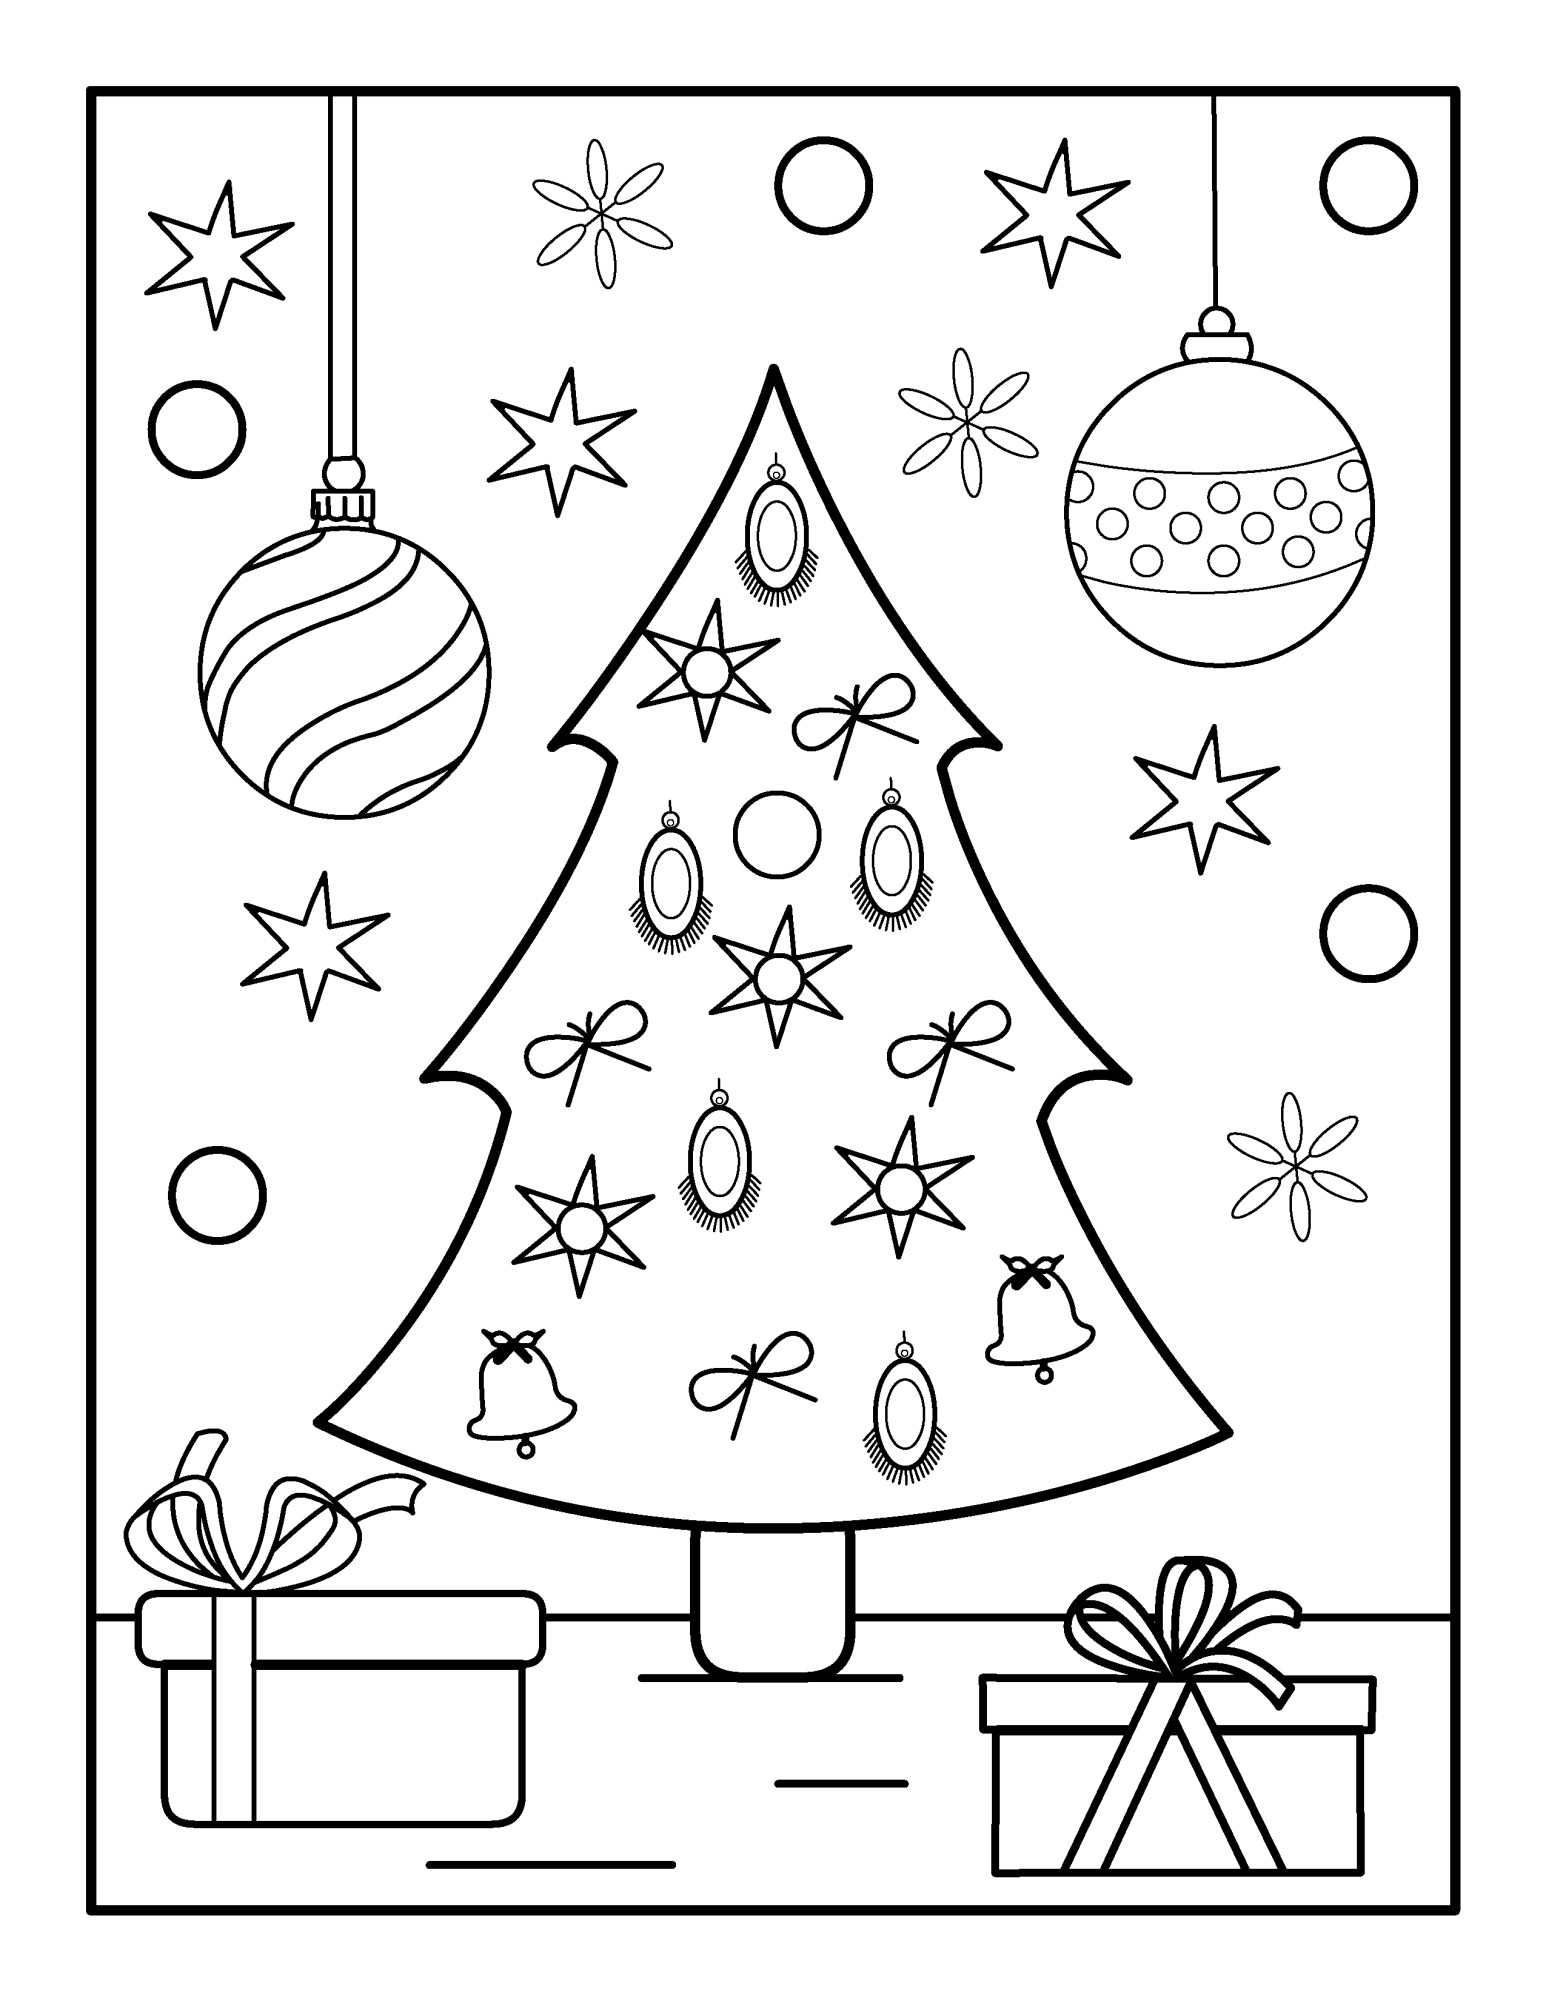 Раскраска для детей: новогодняя ёлка игрушки и коробки с подарками